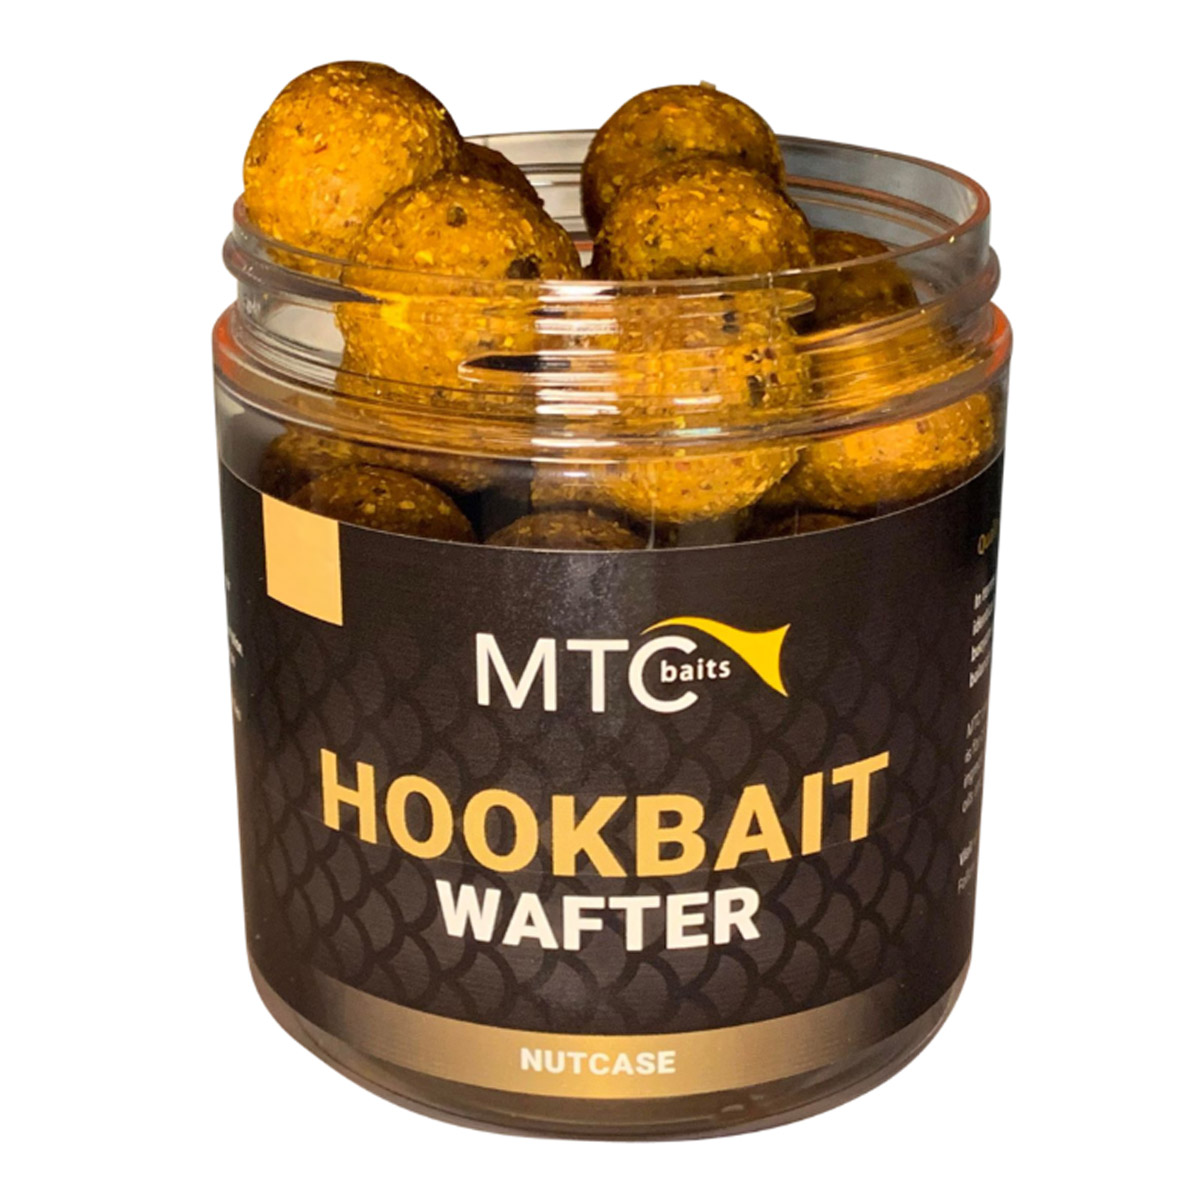 MTC Baits Hookbait Wafter NutCase 24 MM